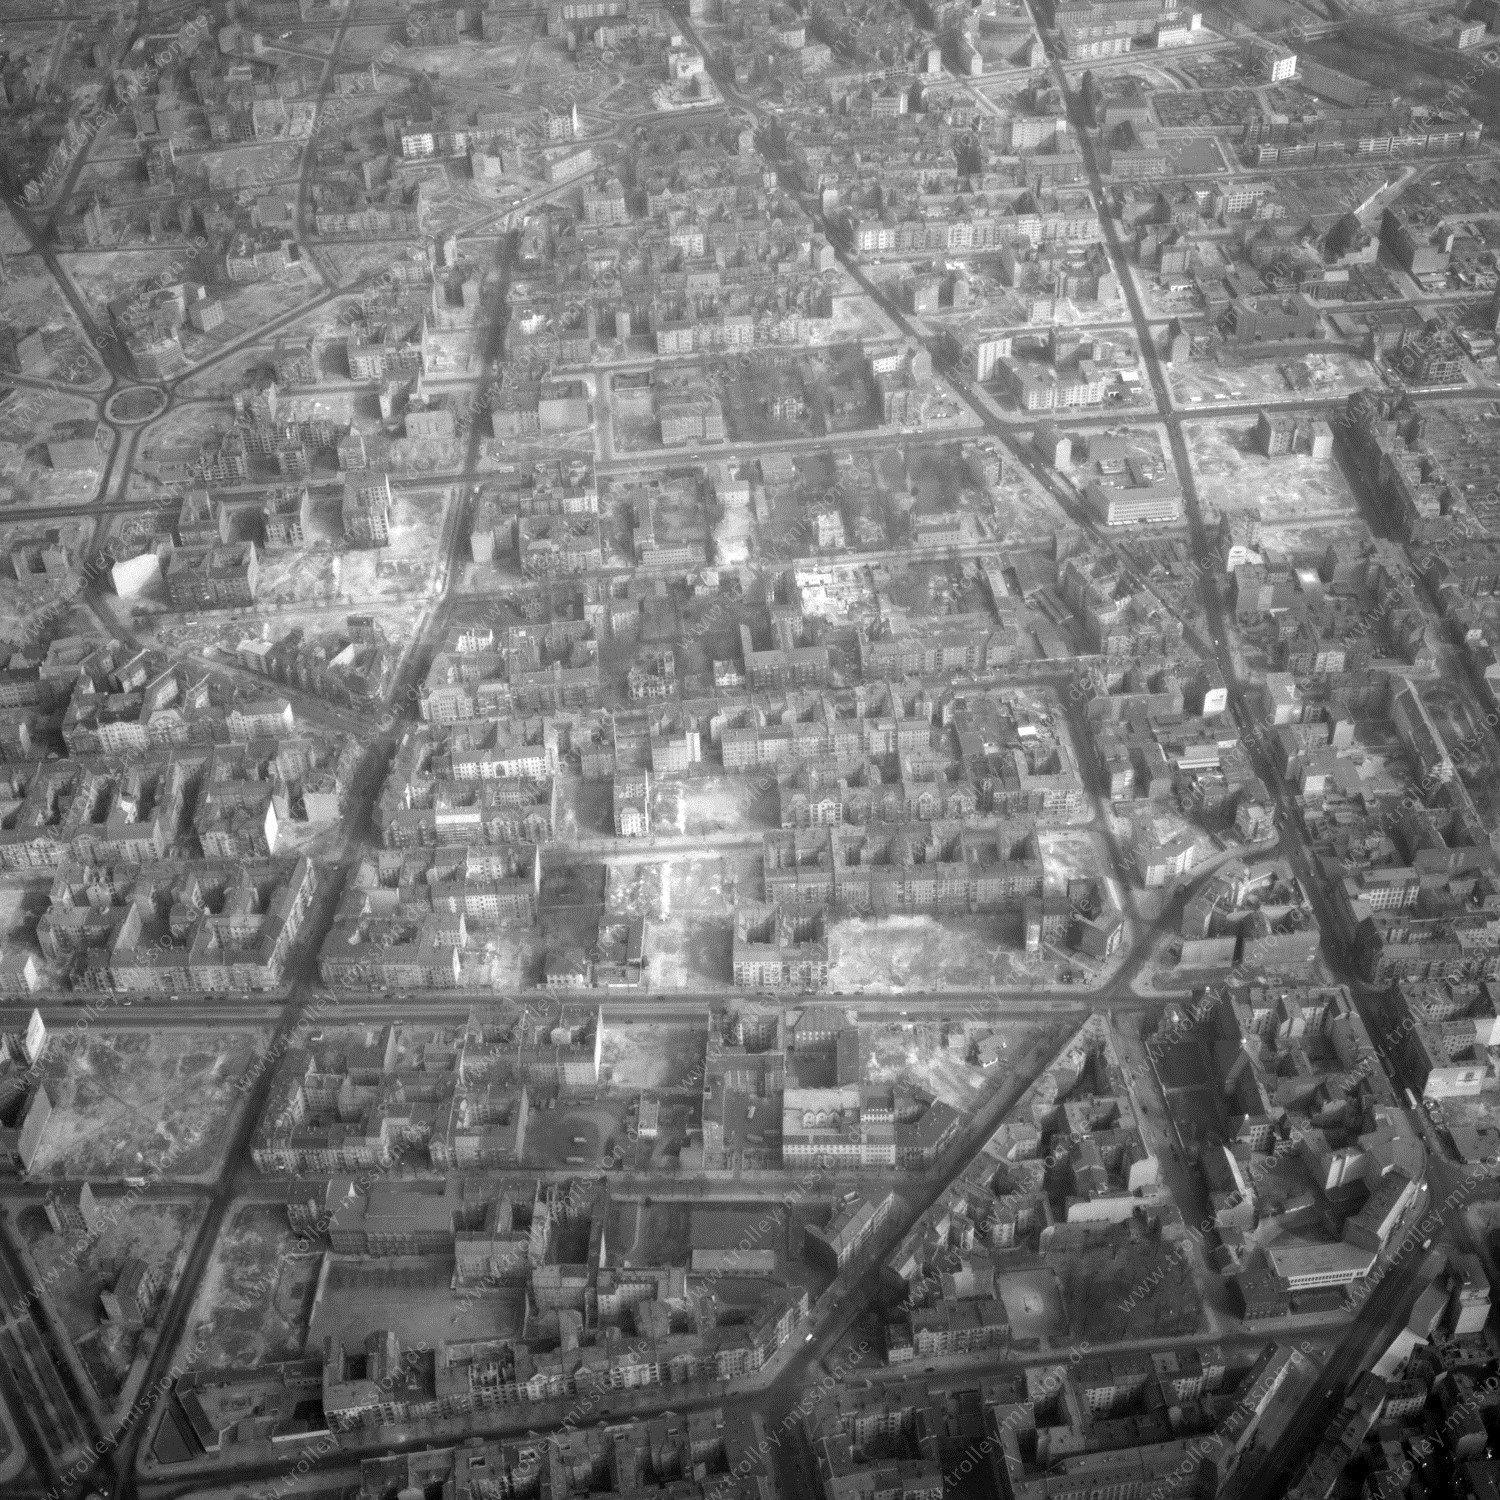 Alte Fotos und Luftbilder von Berlin - Luftbildaufnahme Nr. 04 - Historische Luftaufnahmen von West-Berlin aus dem Jahr 1954 - Flugstrecke Delta